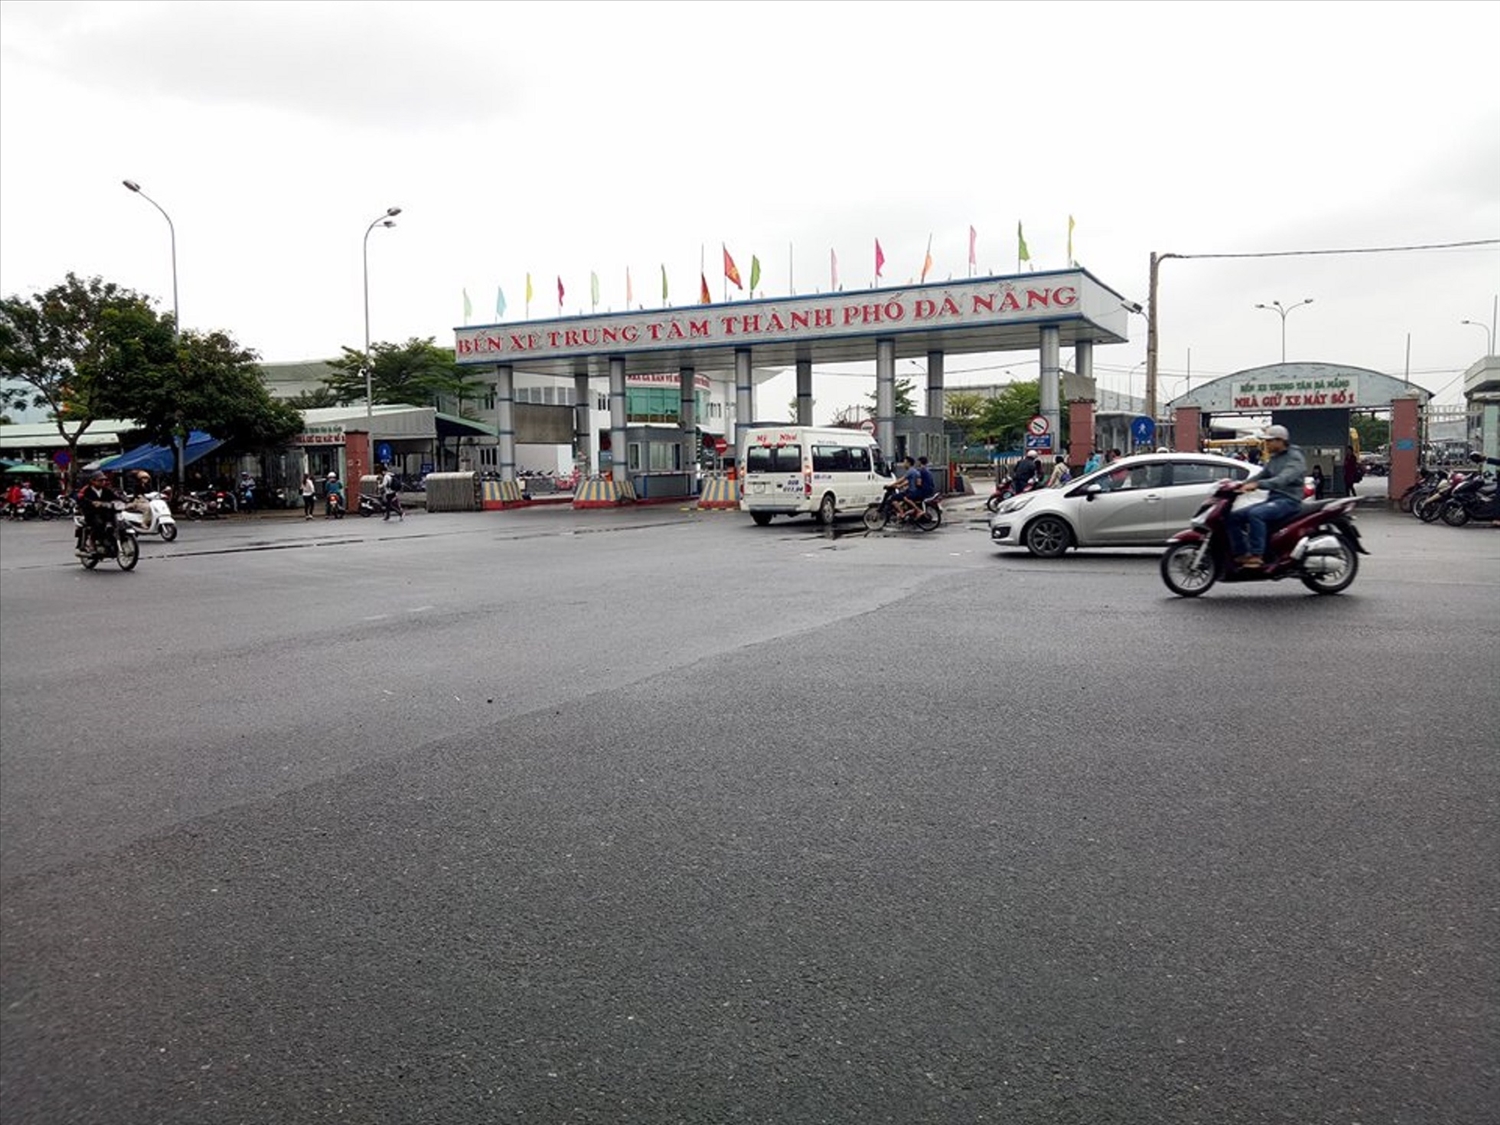 Bến xe Đà Nẵng vắng tanh dù nhiều doanh nghiệp vận tải đã mở bán vé xe Tết.